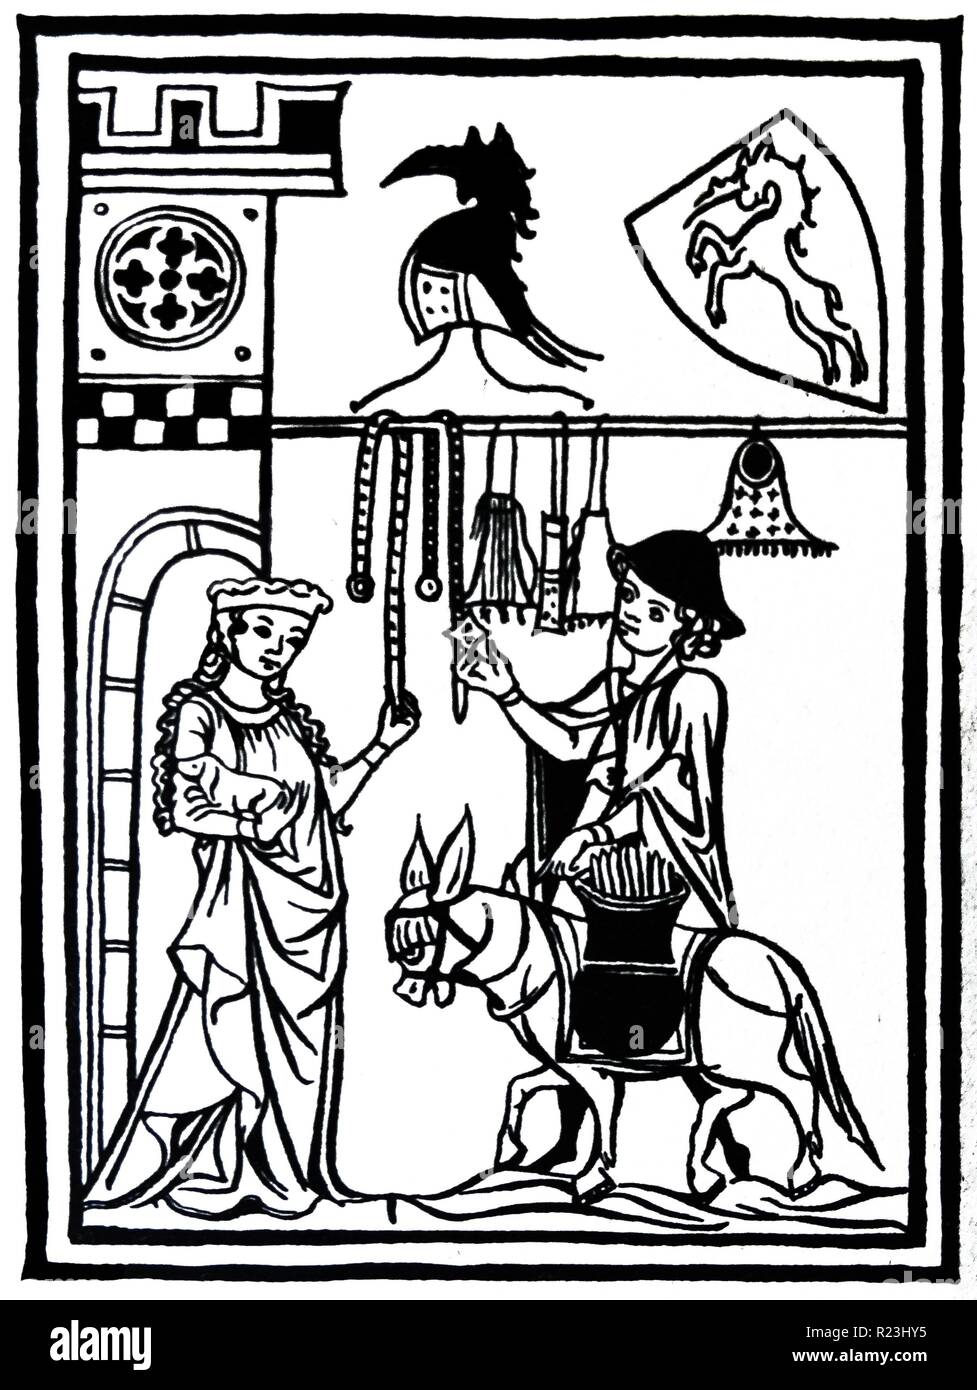 Holzschnitt eines Reisenden Hausierer seine Waren anzeigen an die Frau des Schlosses. Sie ist ein kleiner Hund dargestellt, während Sie die Ware tragen. Vom 14. Jahrhundert Stockfoto